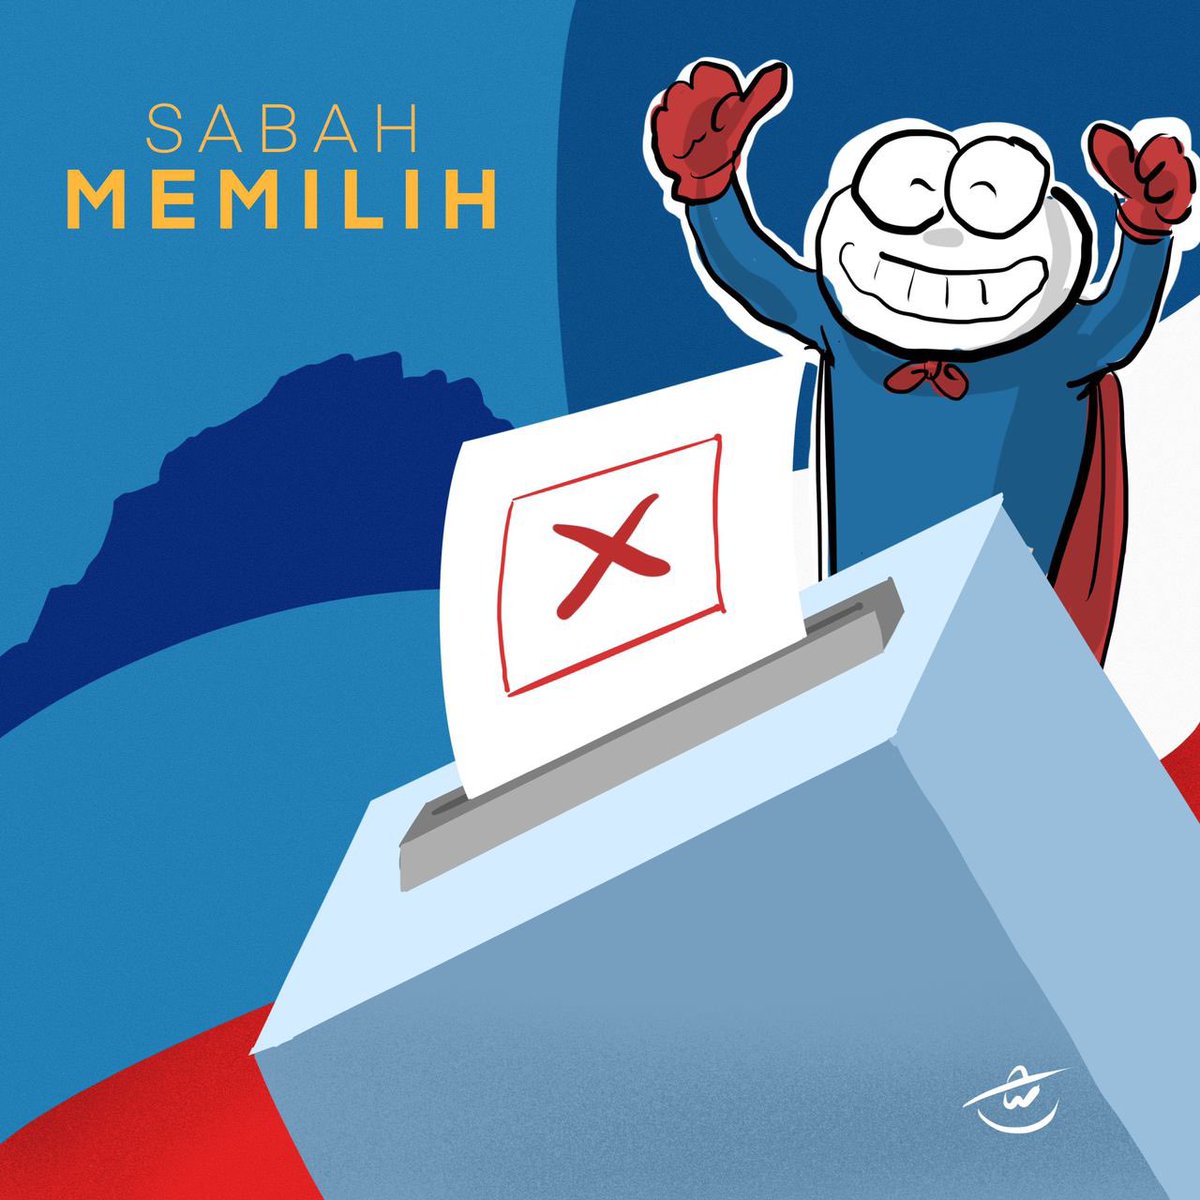 Penentuan! Yang penting patuh SOP!
Good Luck Sabah!

#SabahMemilih #SabahBangkit #Artoboy